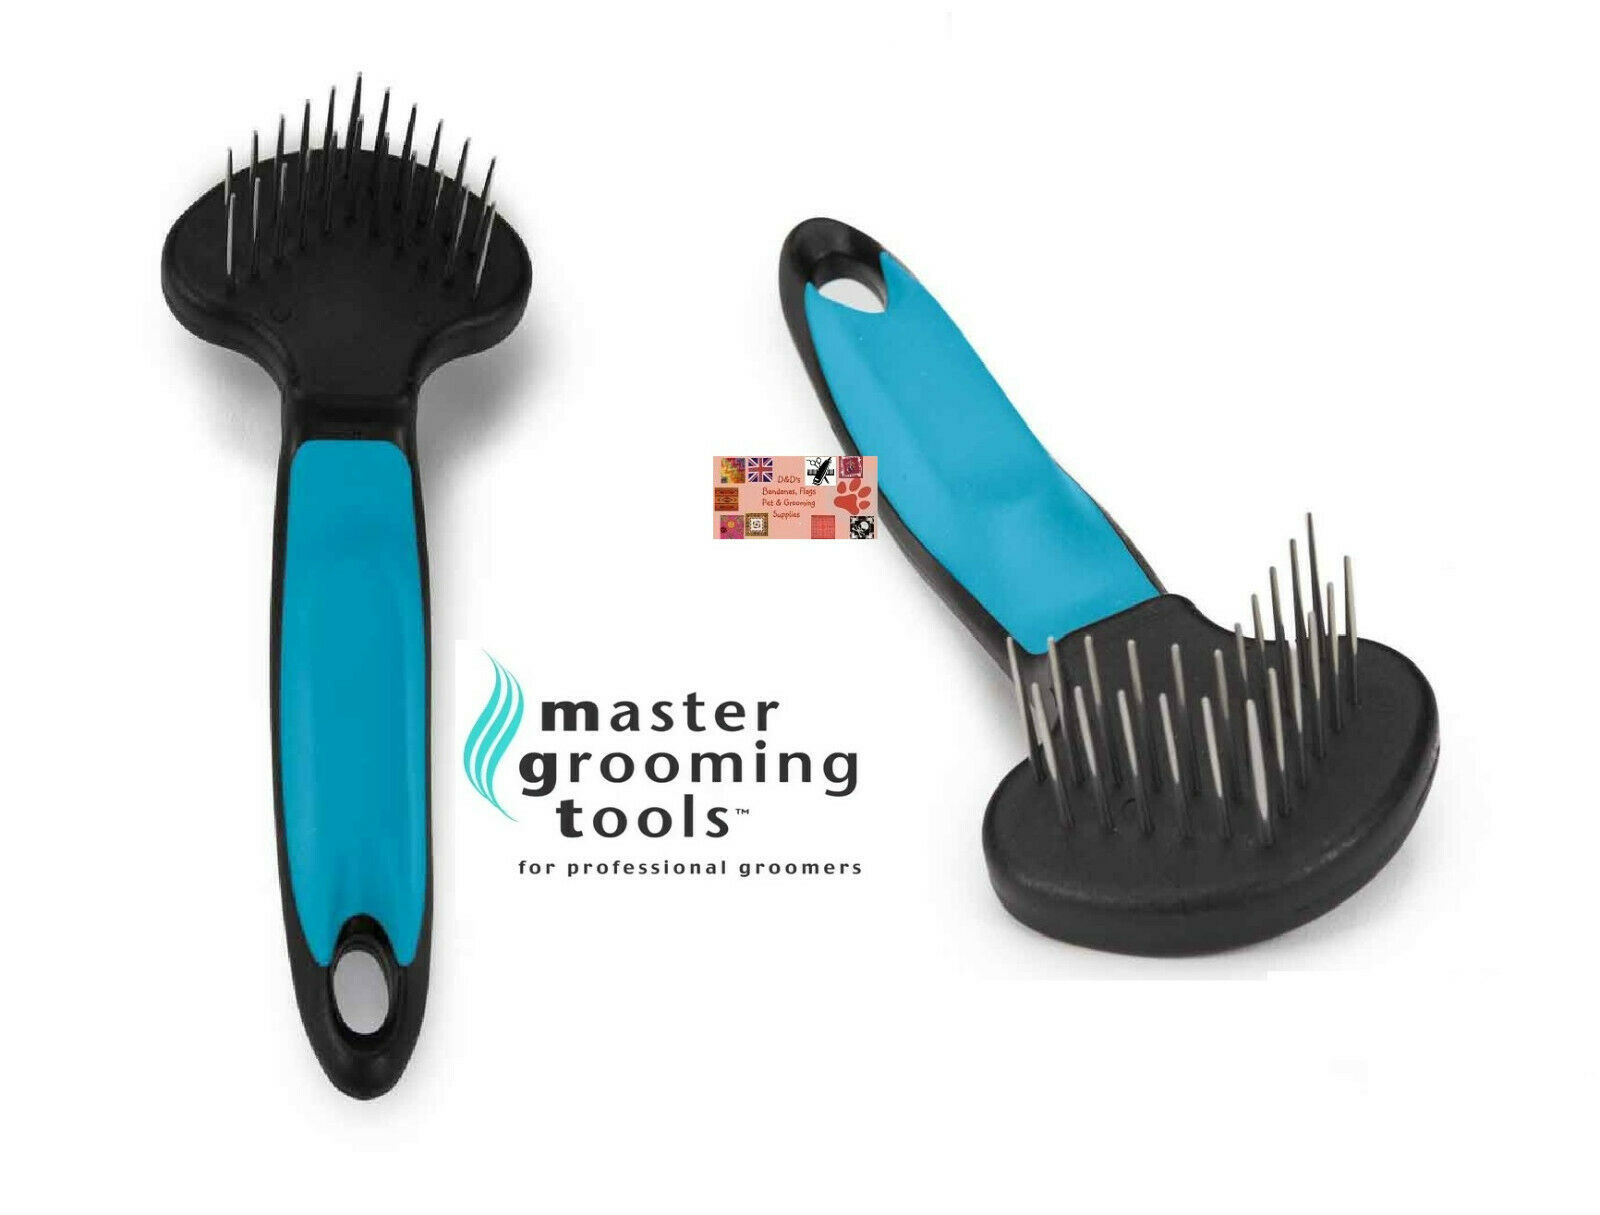 Master grooming tools v-rake double row pin rake hair dematting coat